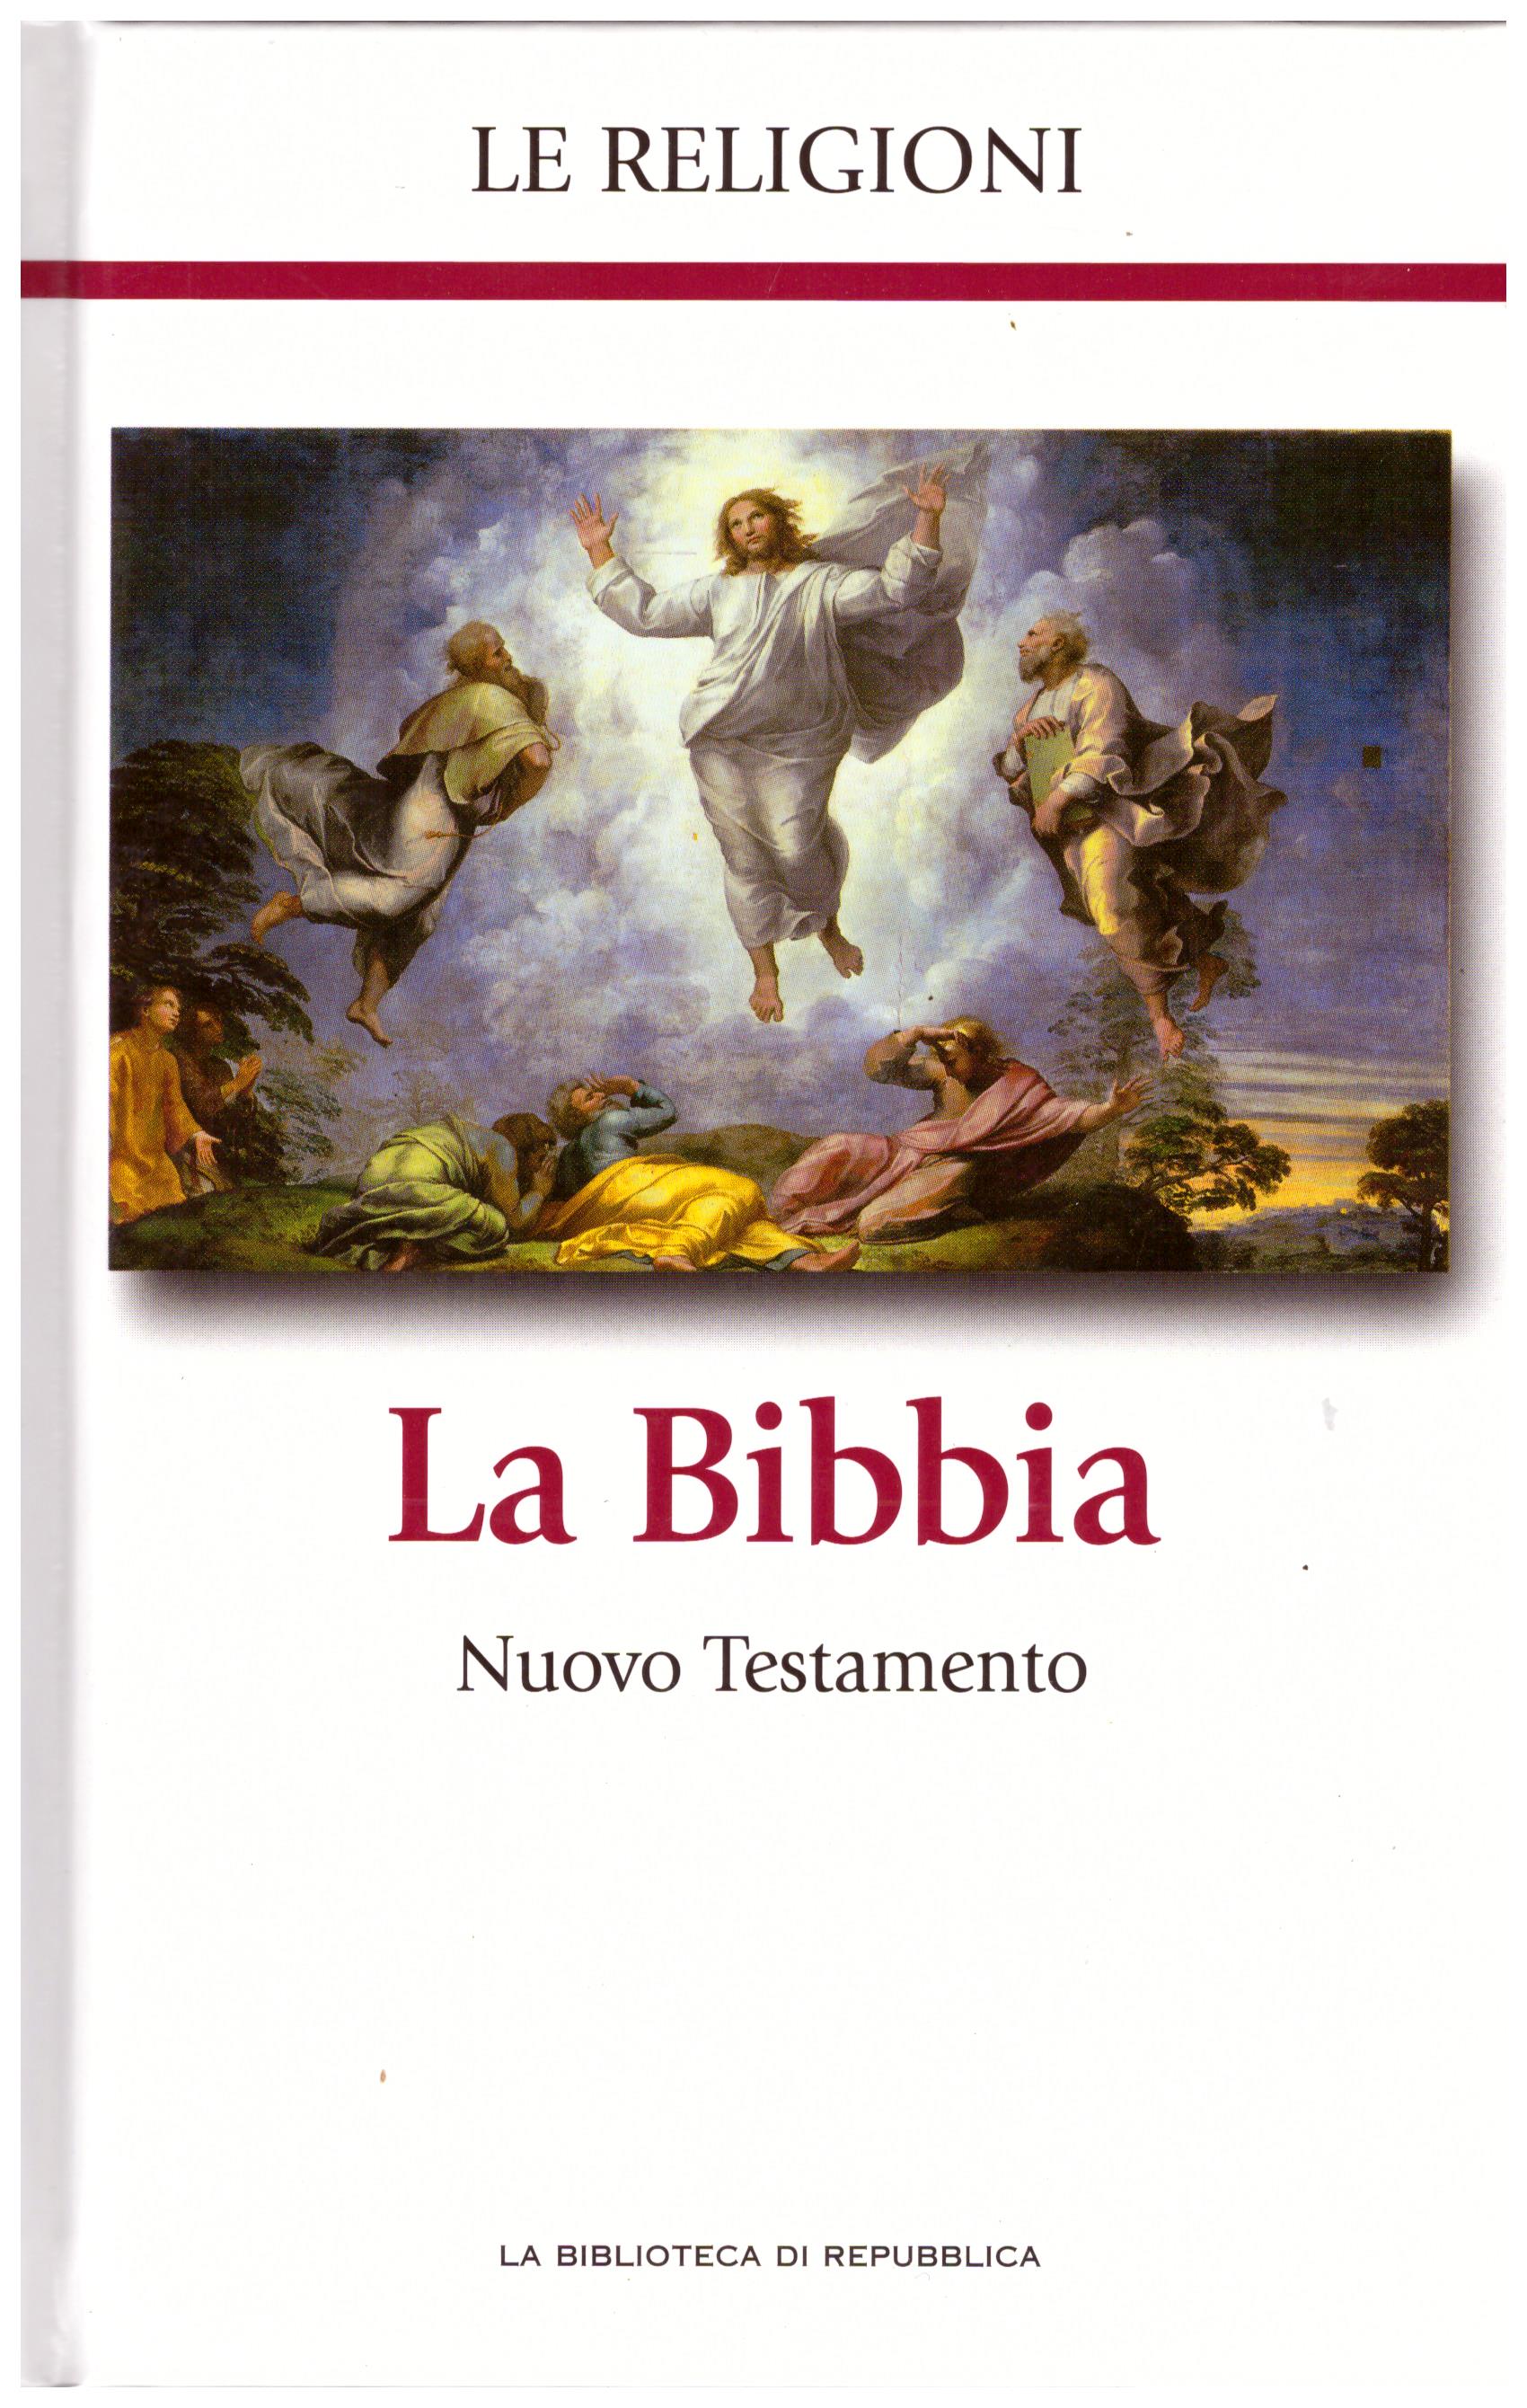 Titolo: Le religioni, La Bibbia Nuovo testamento seconda parte N.3      Autore: AA.VV, la biblioteca di Repubblica     Editore: Piemme